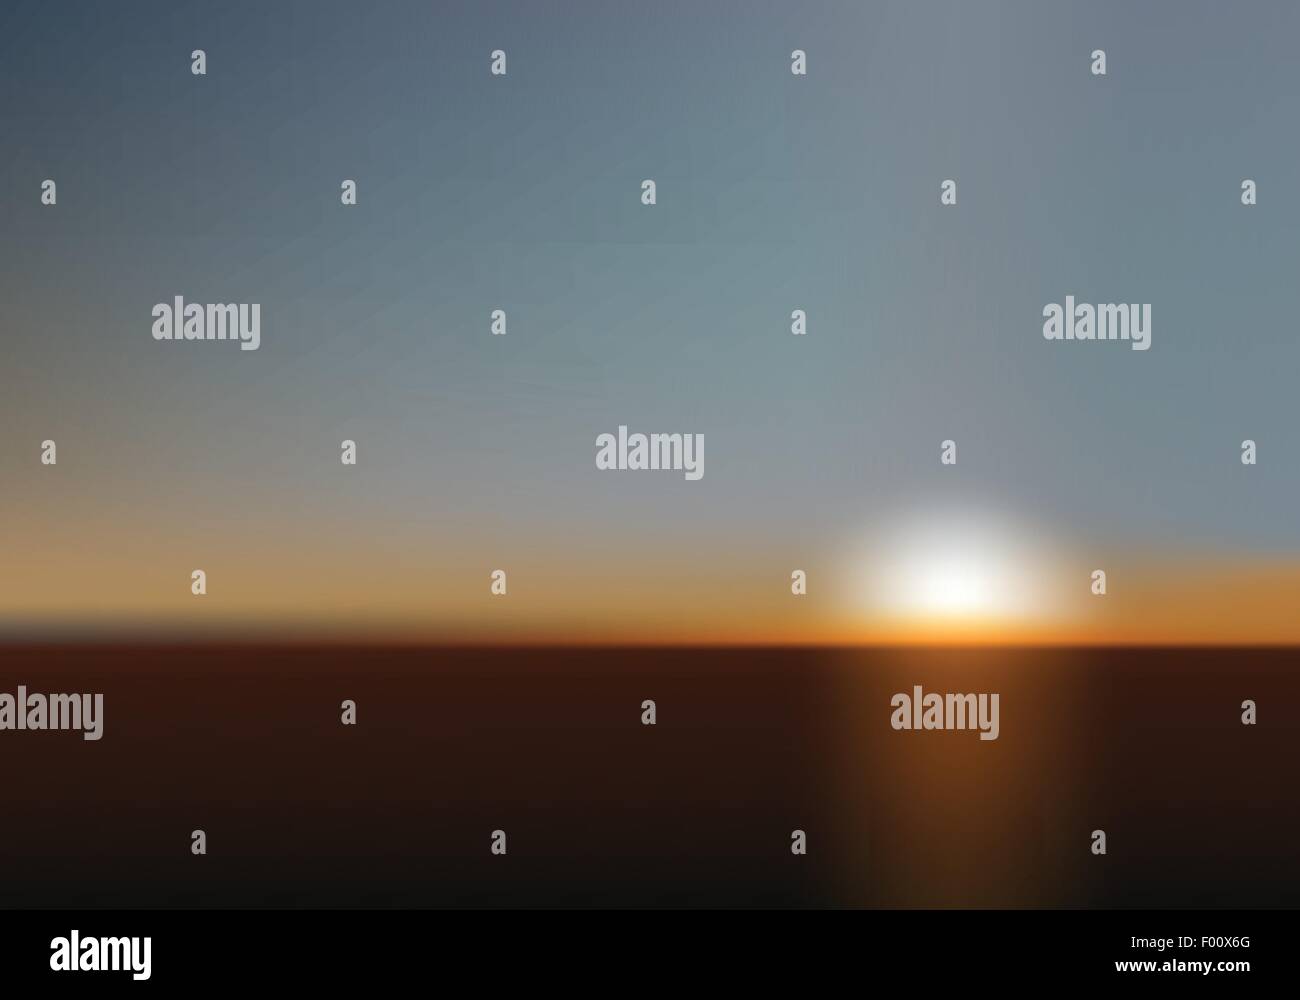 Verschwommene Sonnenuntergang als perfekter Hintergrund für Business und Web-Projekte. Mesh-Vektor-Illustration. Stock Vektor